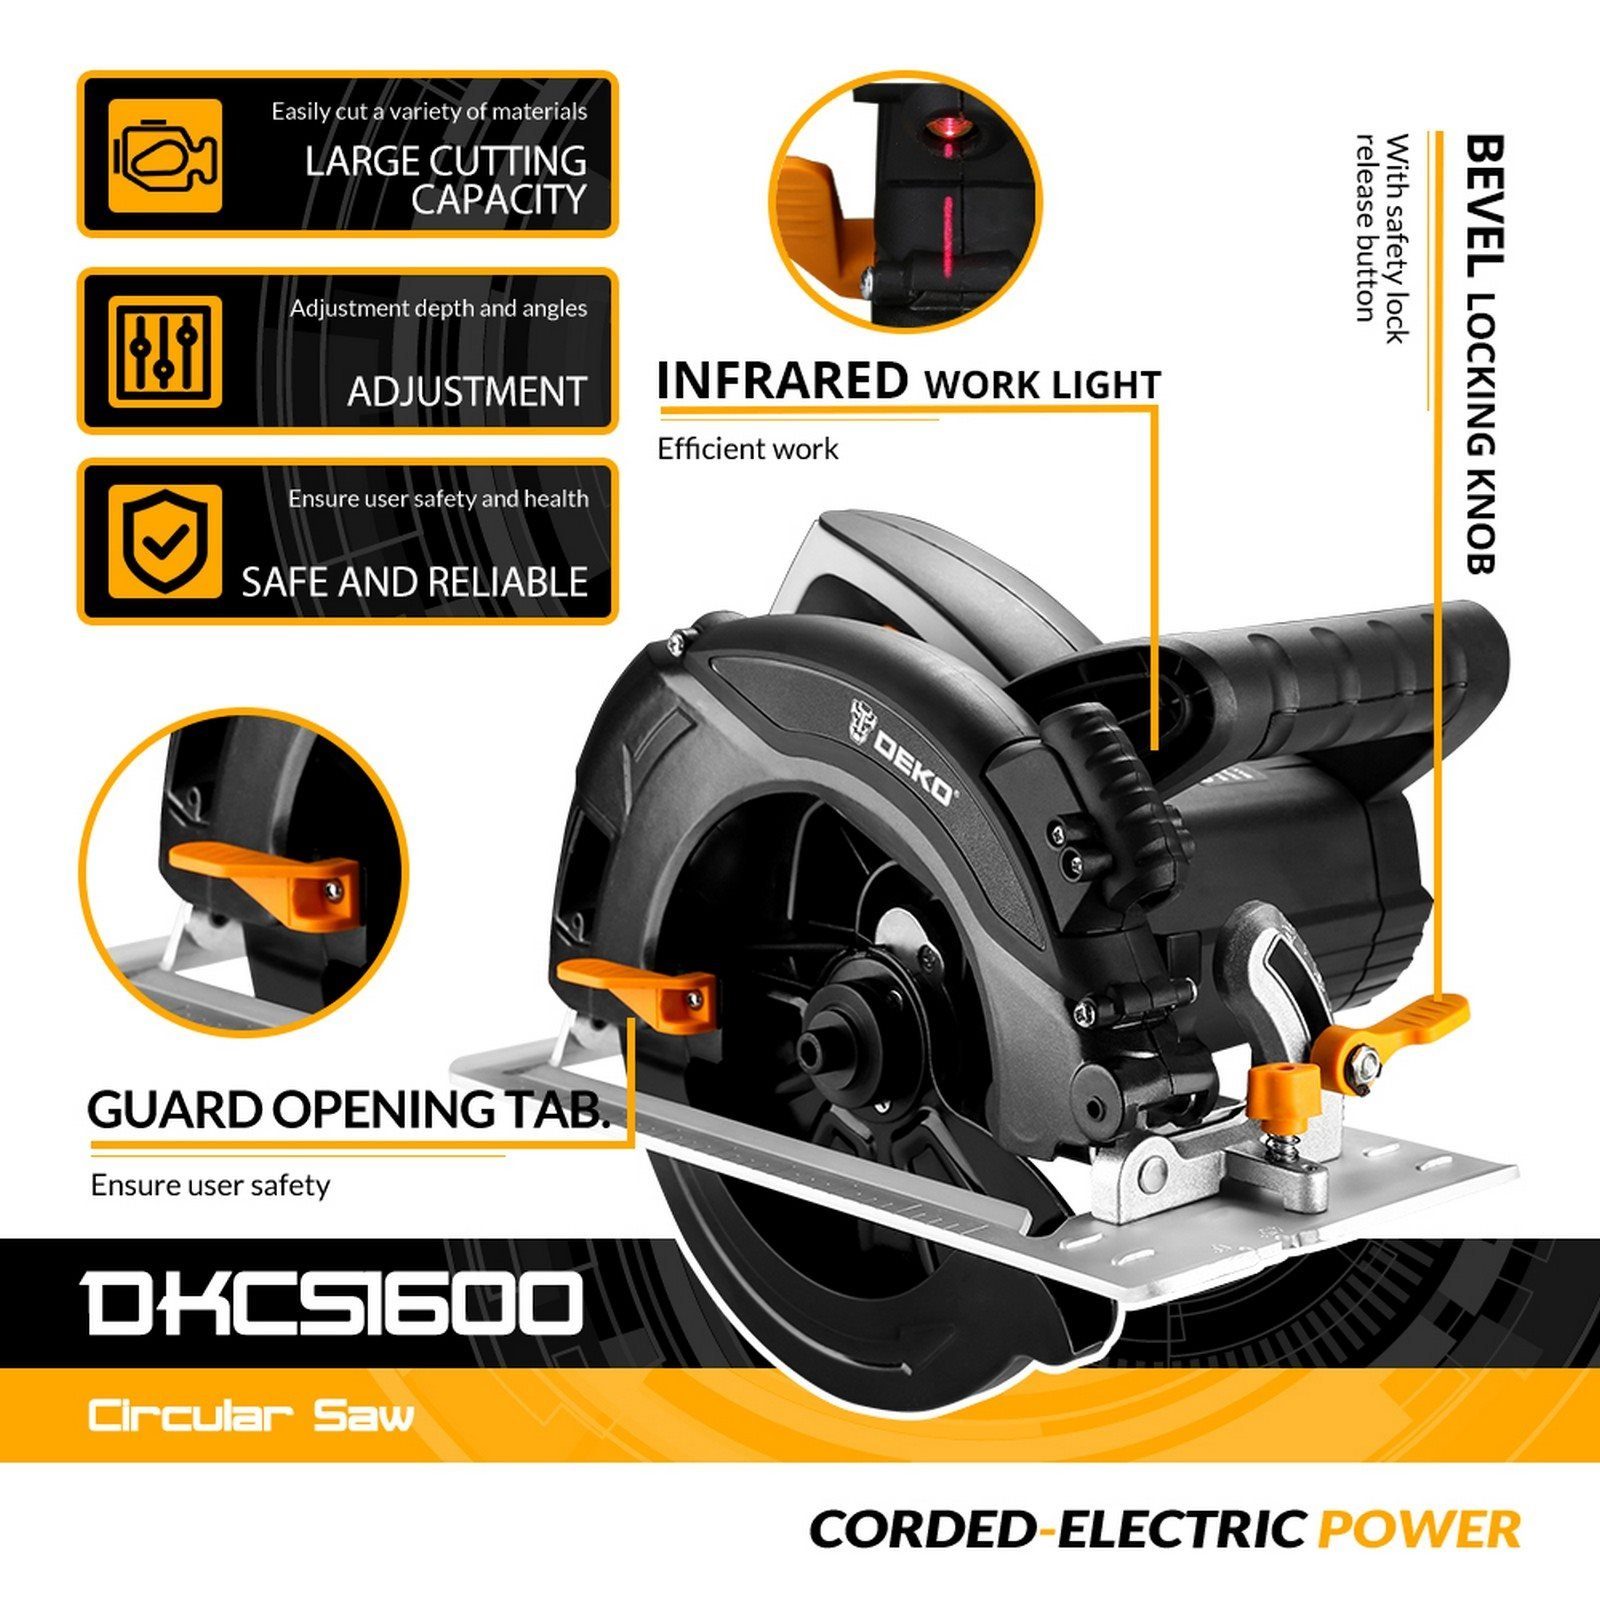 DEKO Handkreissäge DKT-DKCS1600, 5000-U/min., mit - 1600-W-Motor einstellbare und Handkreissäge Laser, vielseitige DEKO Einsatzmöglichkeiten